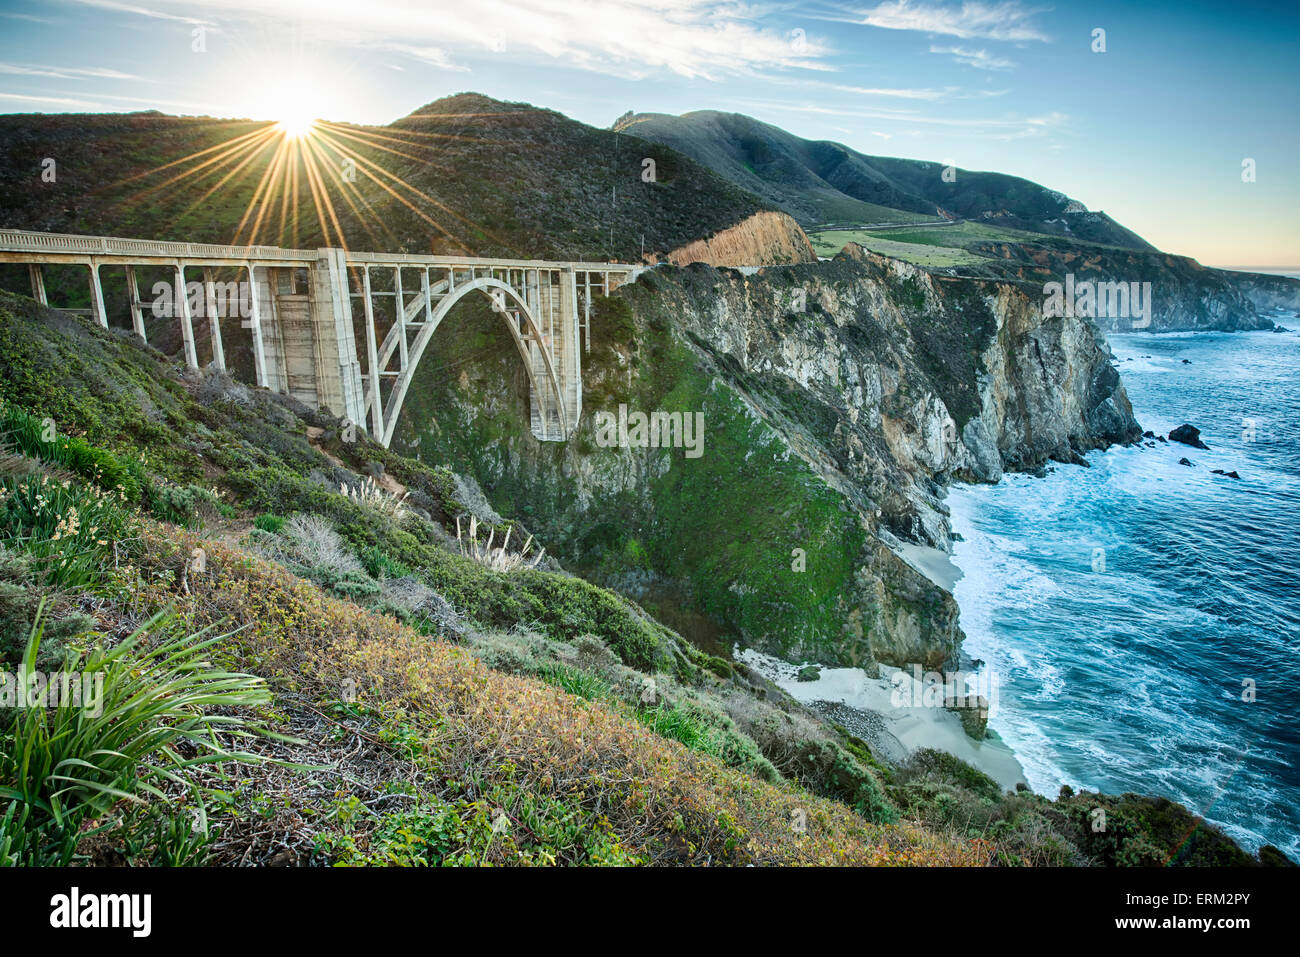 Immagini della costa Californiana da Mendocino a San Mateo spiagge e Big Sur Foto Stock